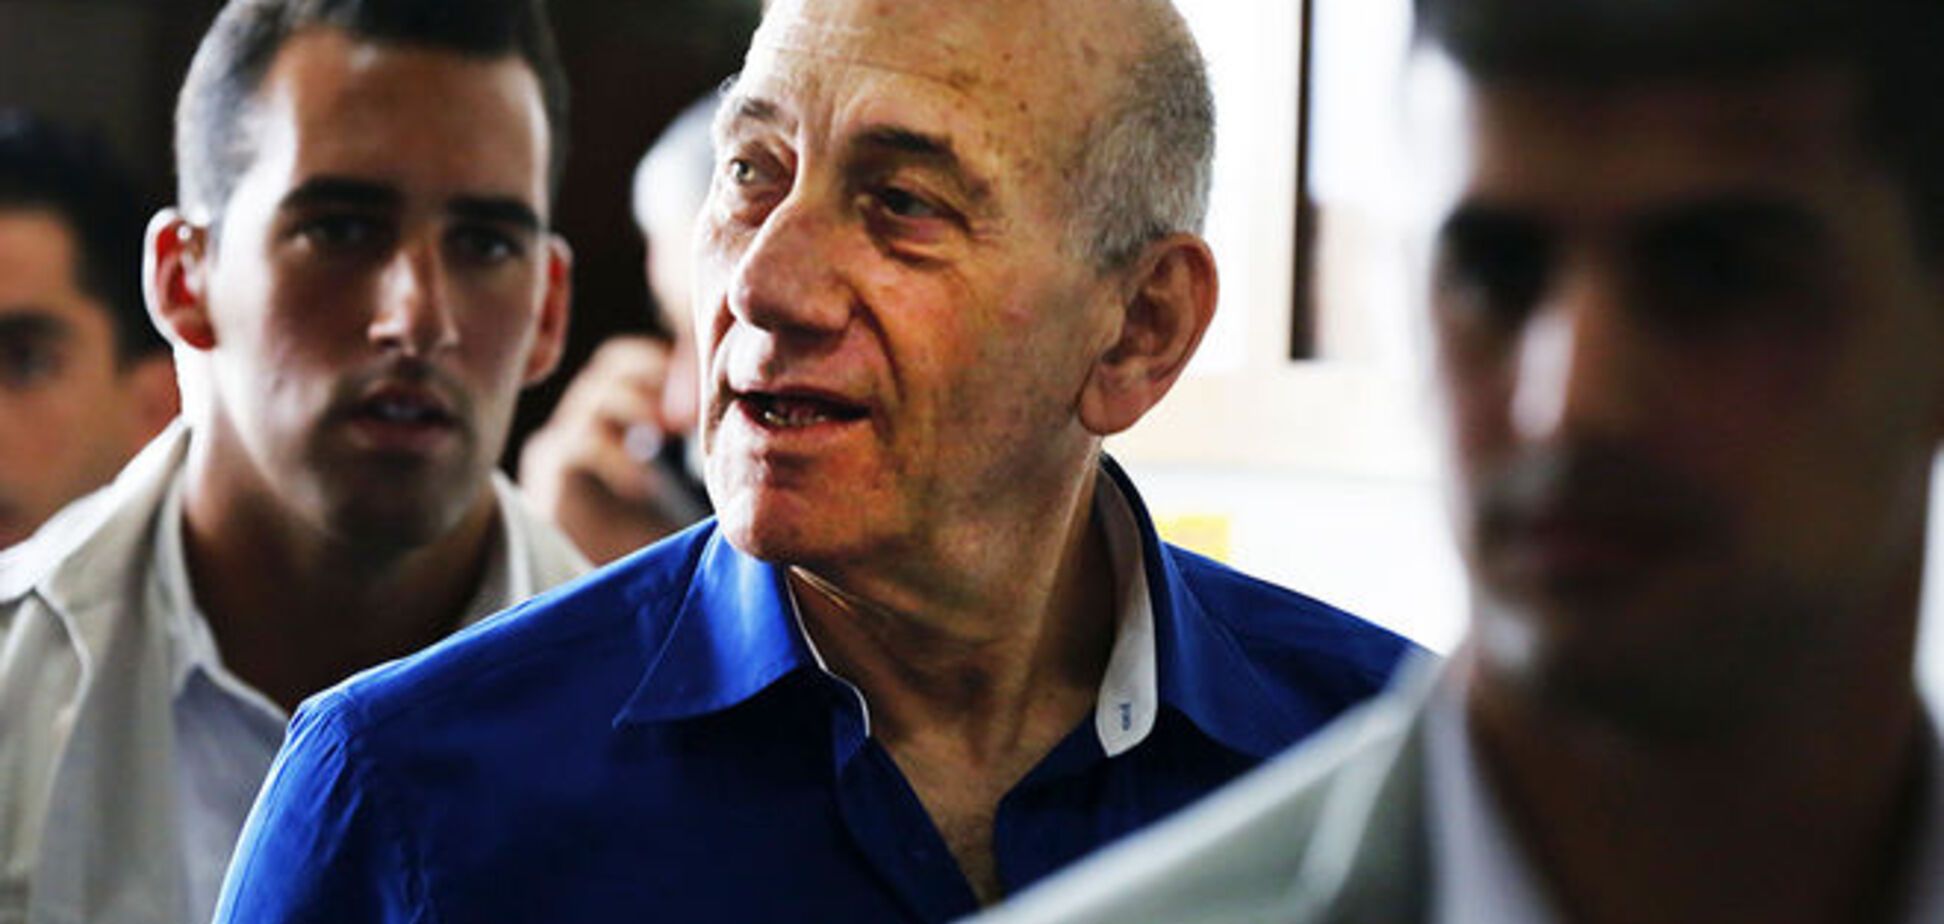 Экс-премьер Израиля Эхуд Ольмерт признан виновным во взяточничестве